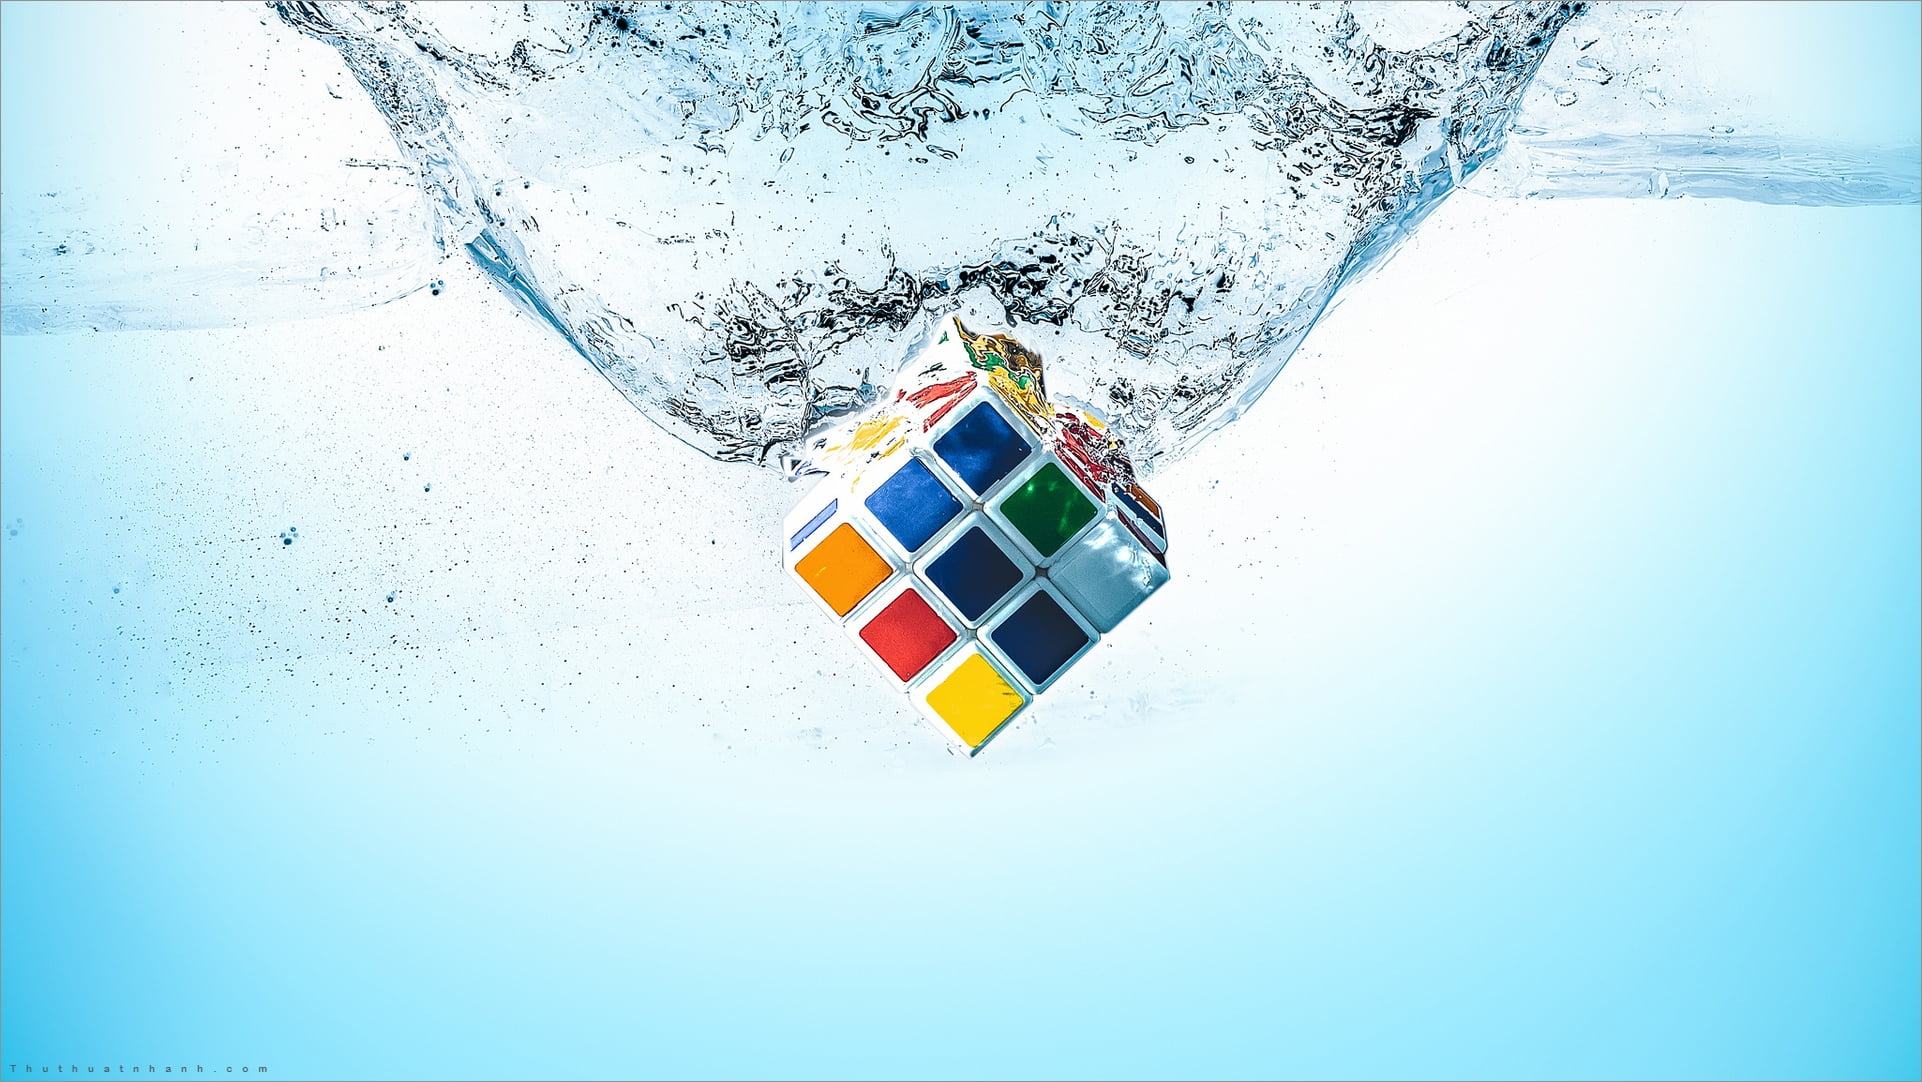 Rubik Đẹp là những bộ Rubik Puzzle được thiết kế độc đáo và thẩm mỹ cao, mang đến cho bạn những giây phút giải trí tuyệt vời và độc đáo. Hãy xem hình ảnh và tìm hiểu thêm về những bộ Rubik Đẹp để lựa chọn cho mình một chiếc khối xoay vòng tuyệt vời nhất.